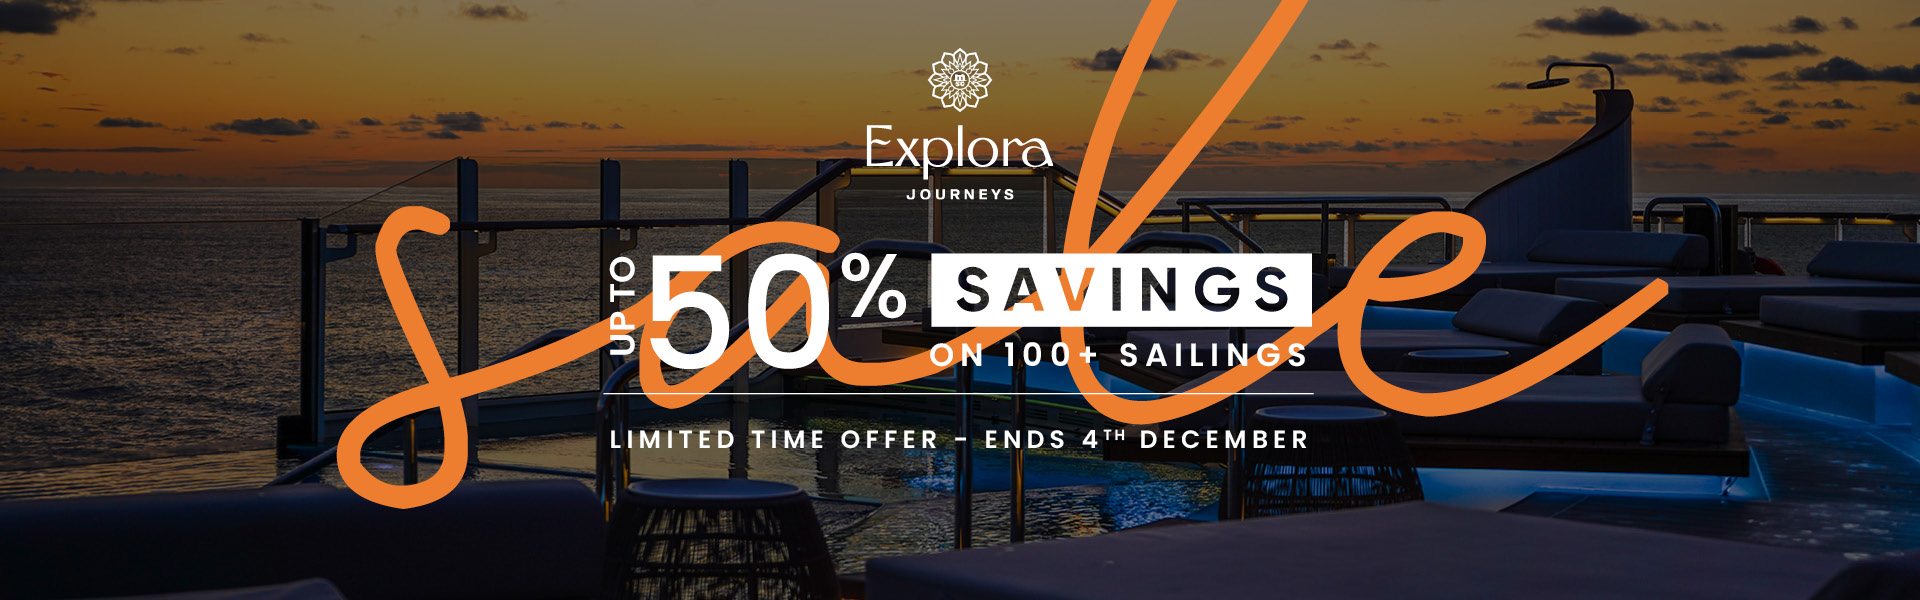 Explora Journeys, Up to 50% Savings